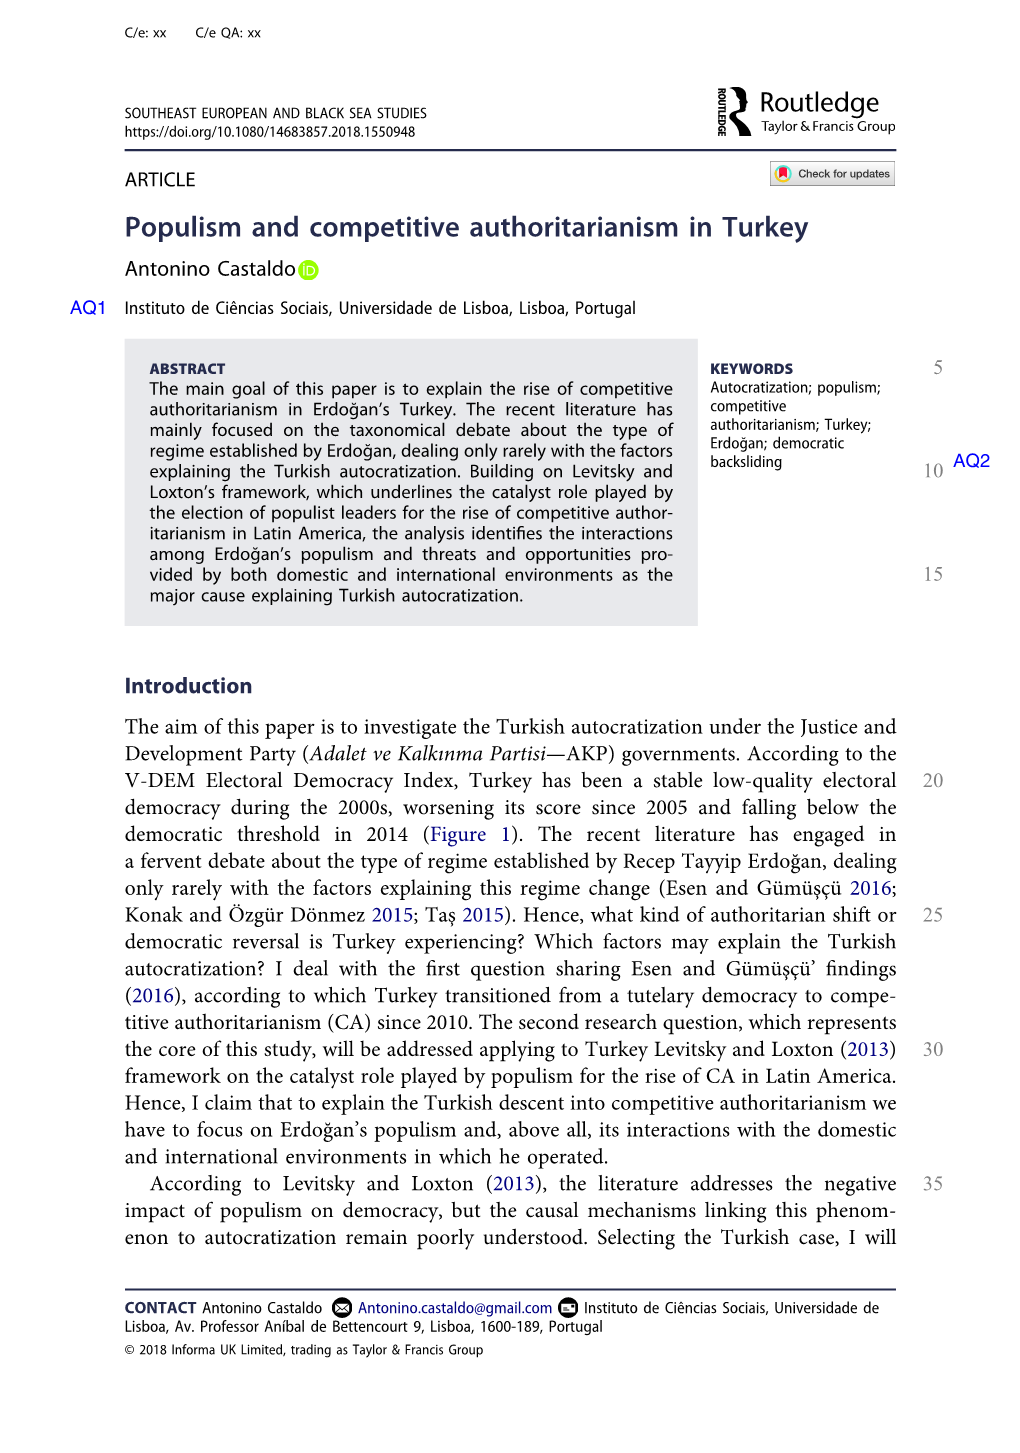 Populism and Competitive Authoritarianism in Turkey Antonino Castaldo